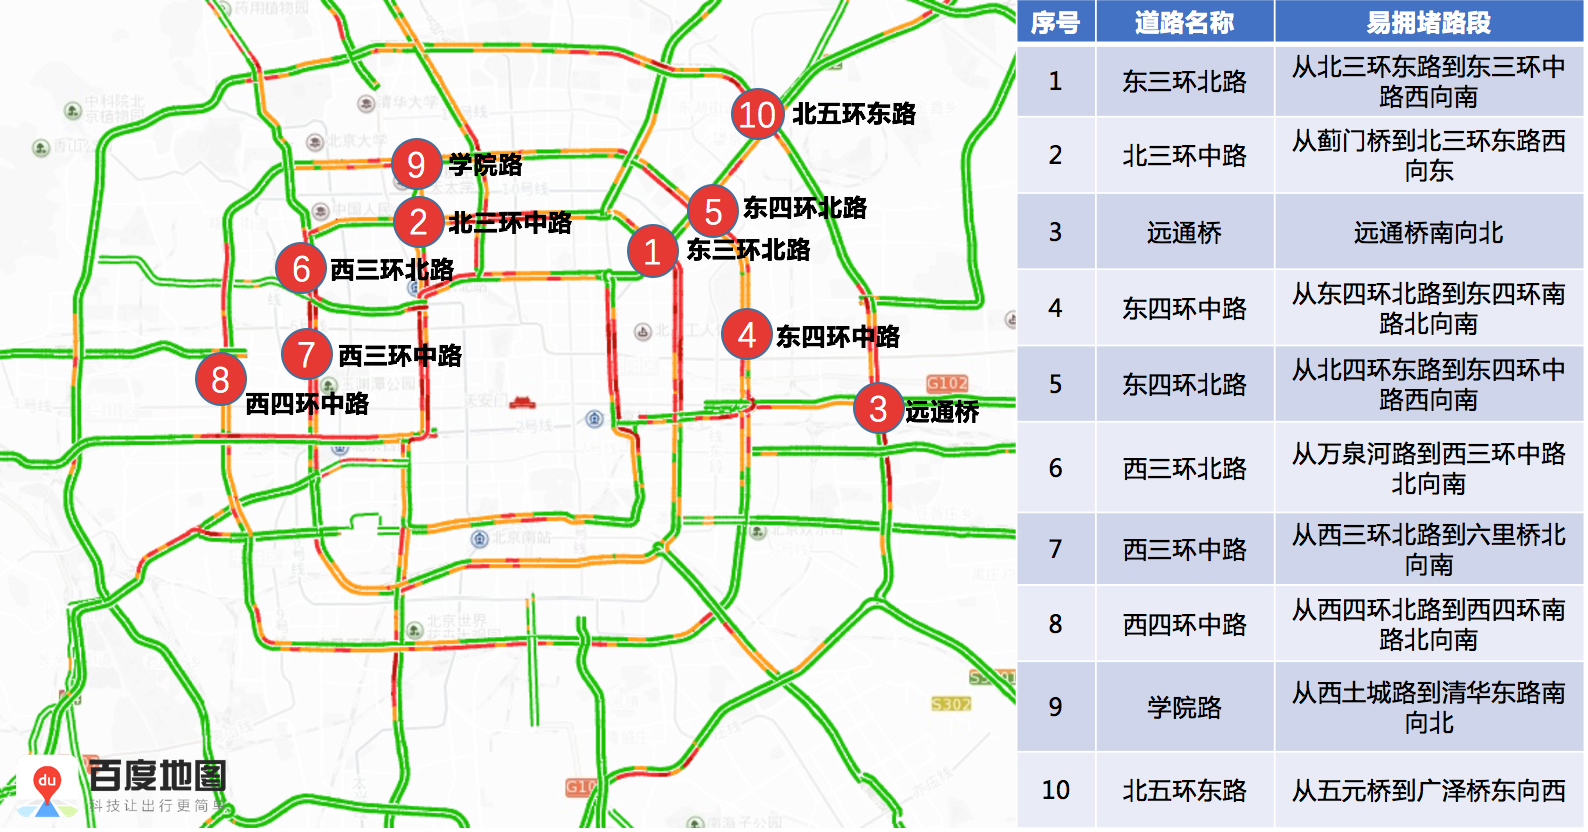 北京交警发布春运机场火车站交通趋势图 躲避拥堵必看